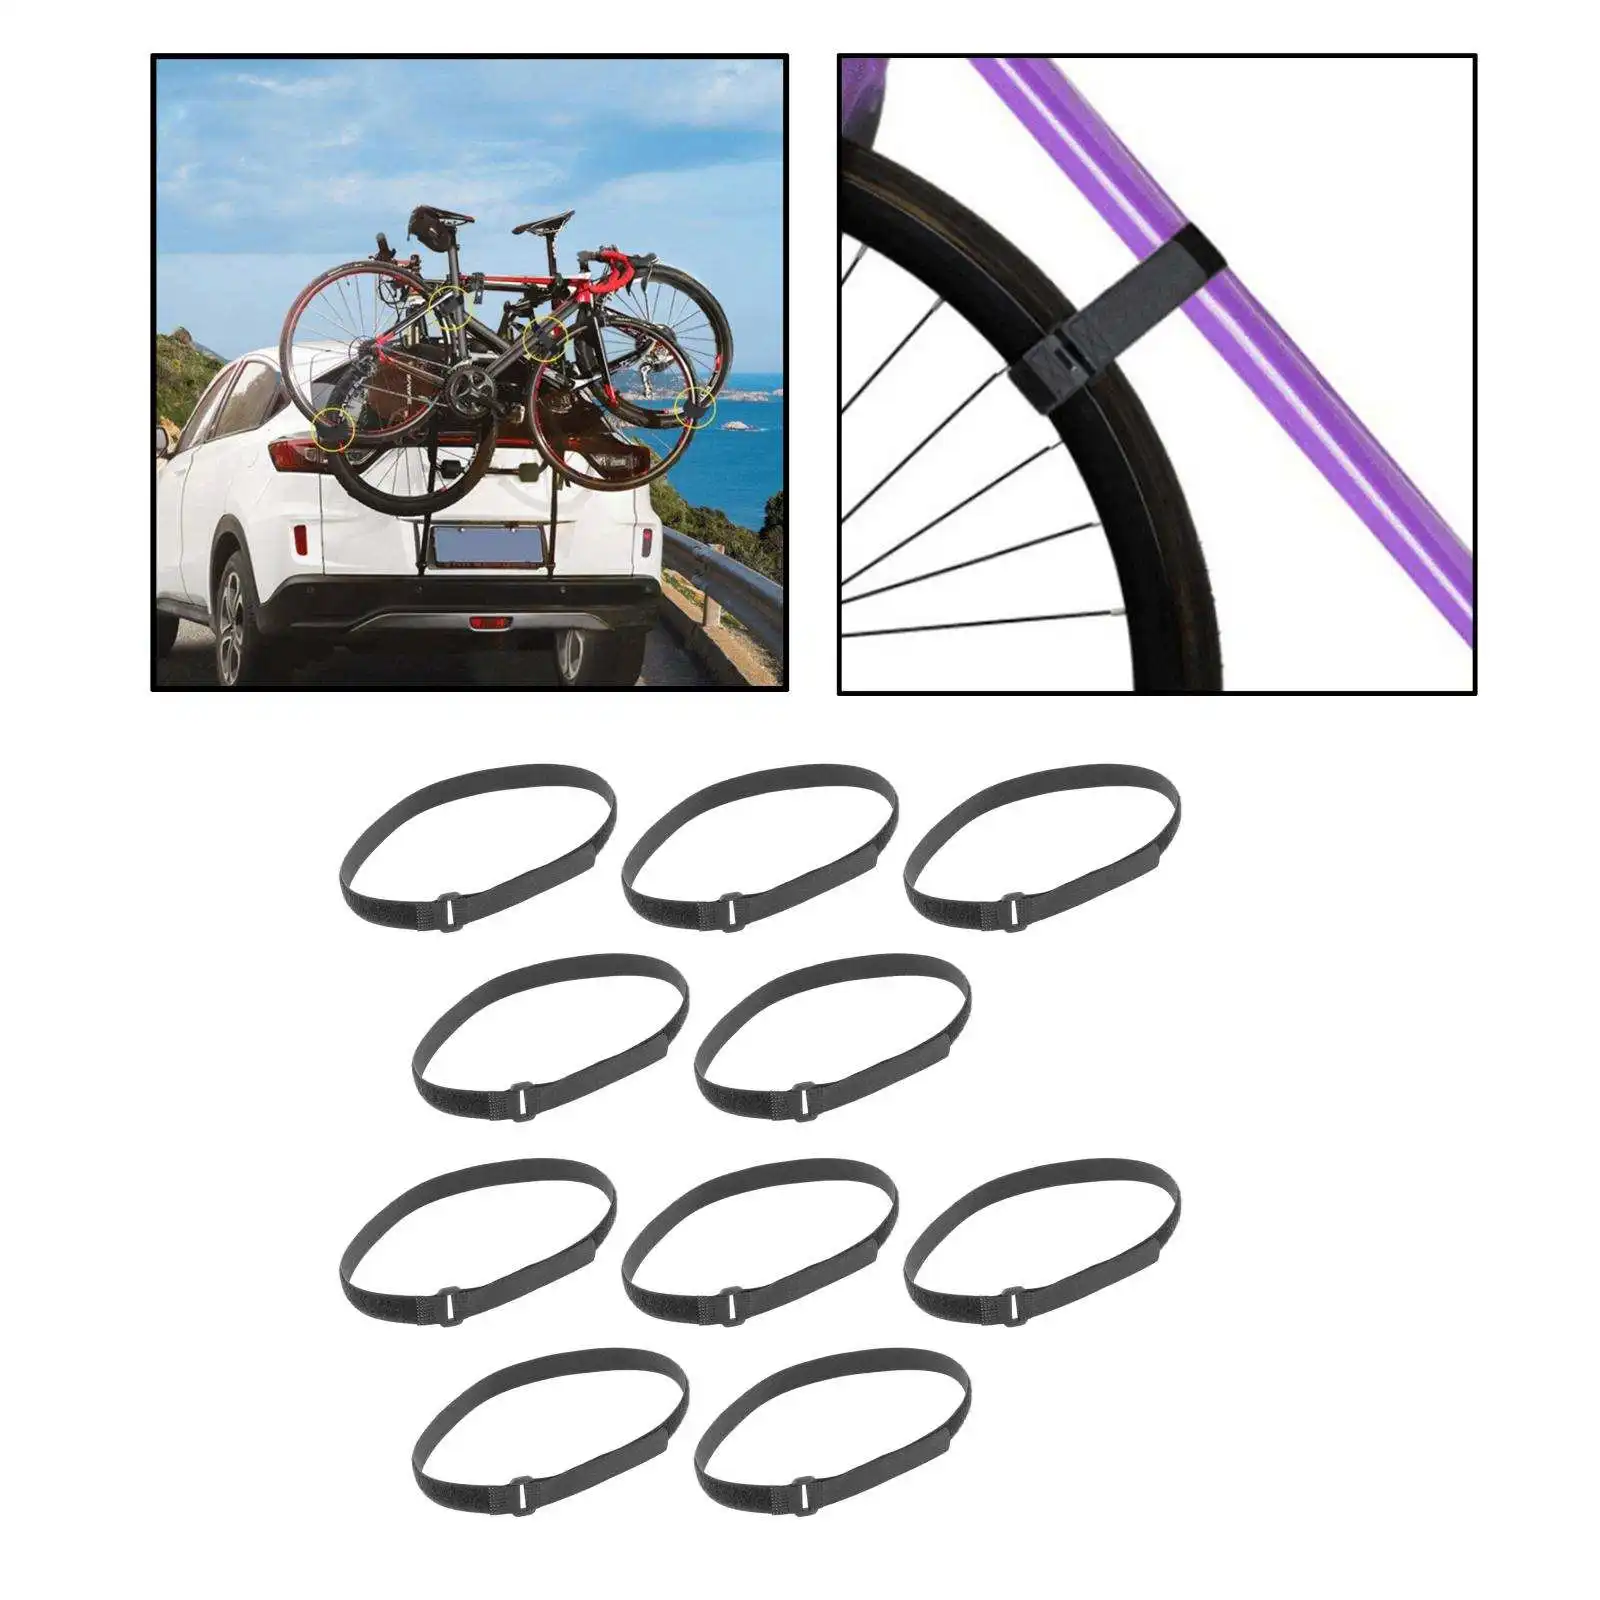 10x Bike Wheel Stabilizer Straps Cargo Bicycle Rack Nylon Tie Down Belts